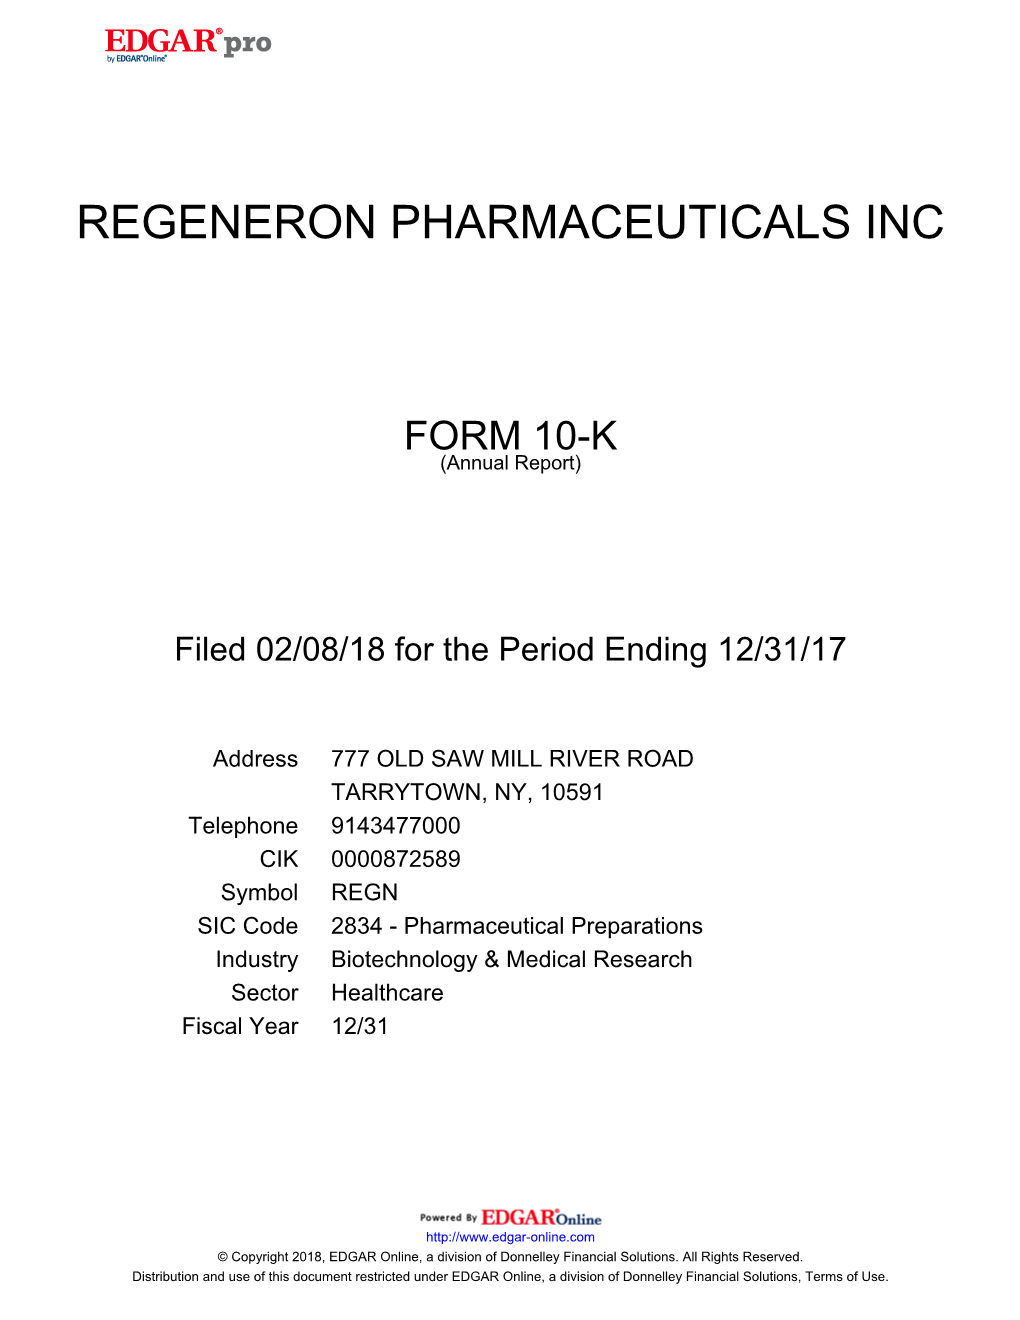 Regeneron Pharmaceuticals Inc